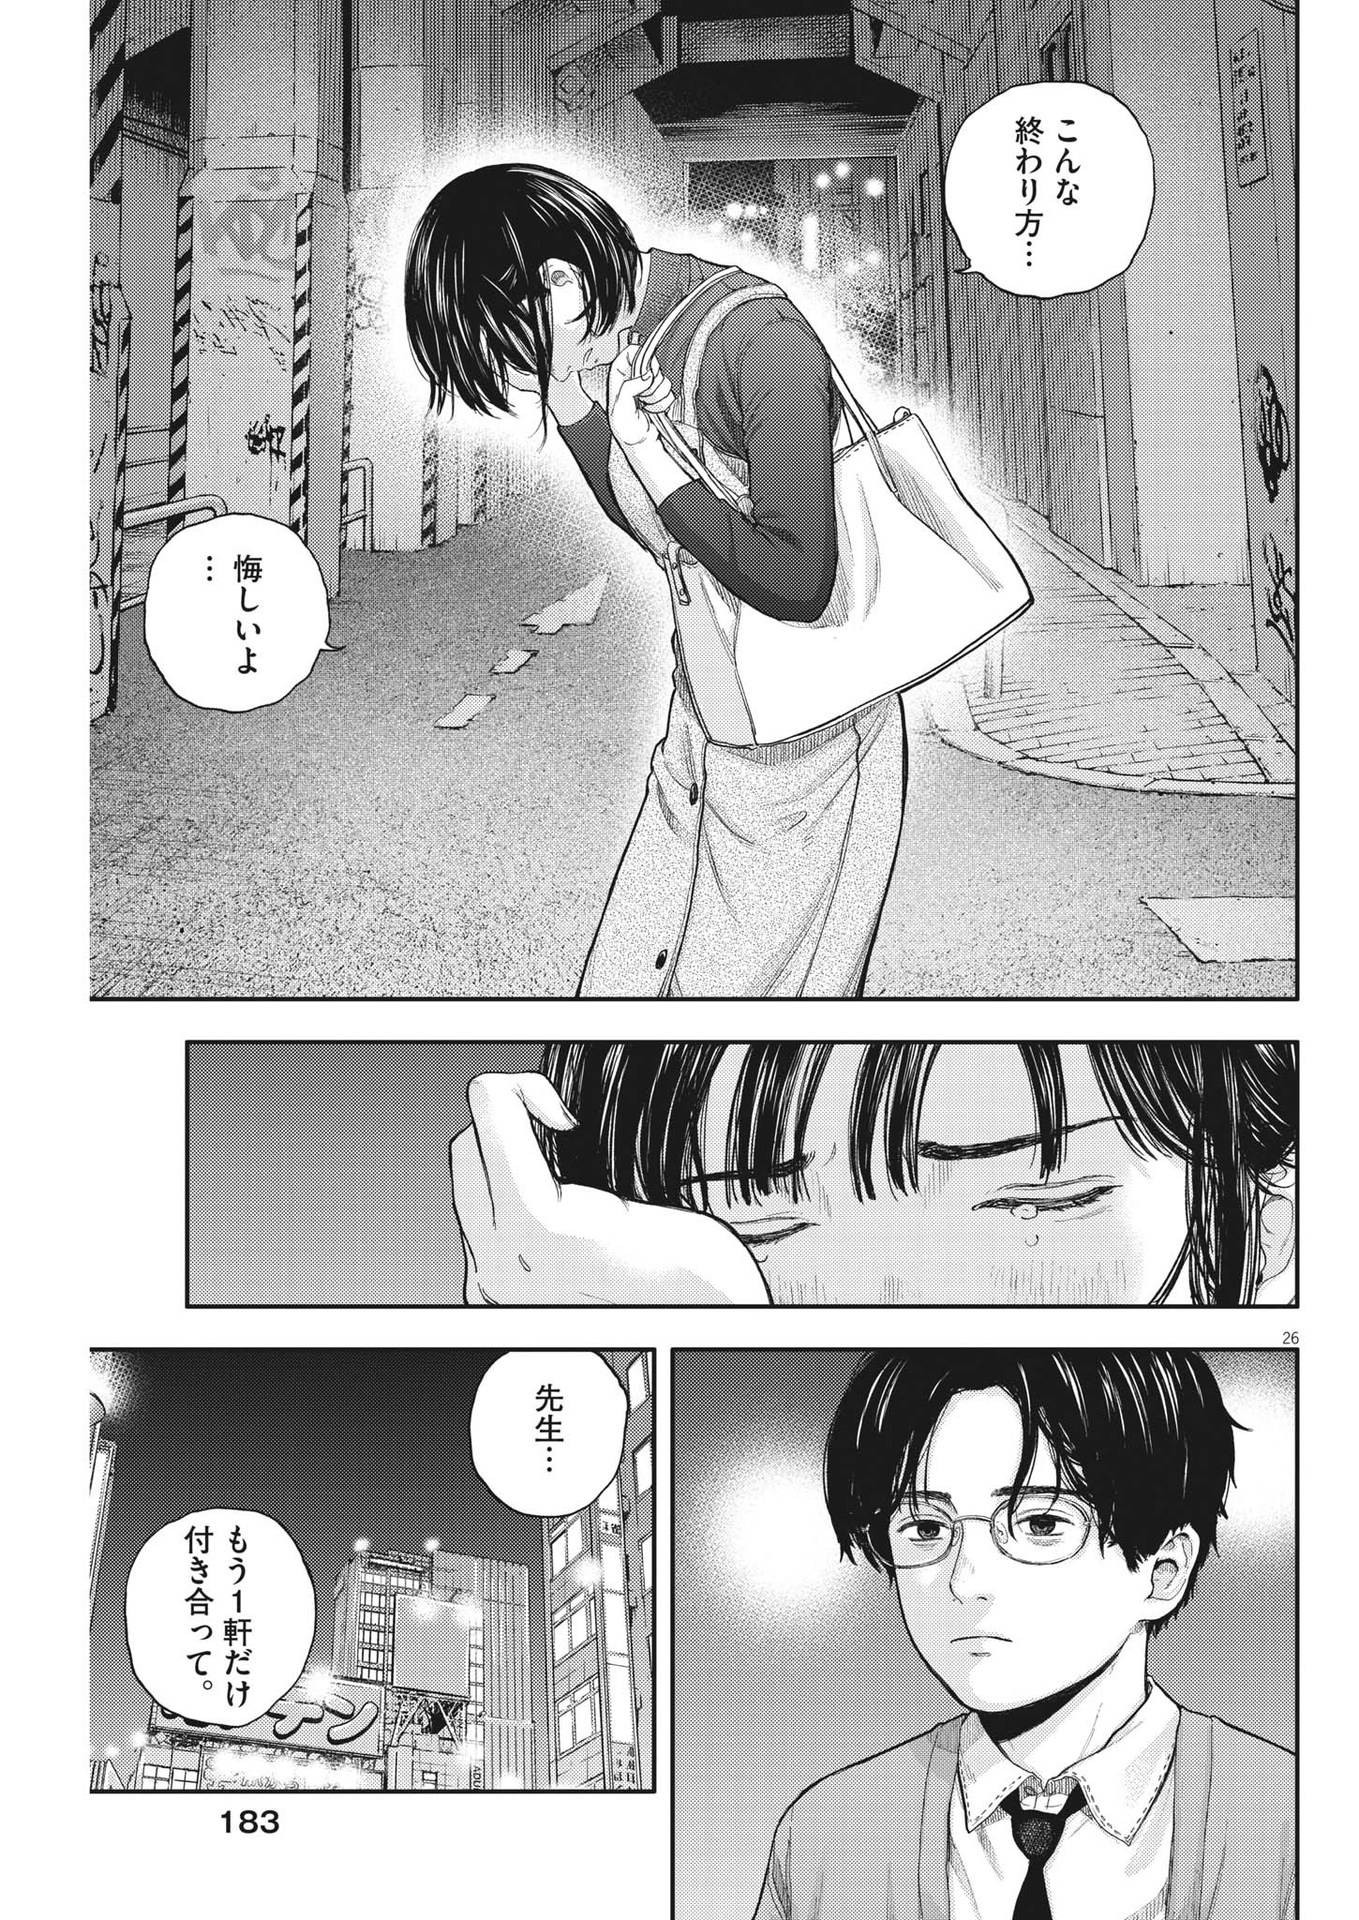 Yumenashi-sensei no Shinroshidou - Chapter 2 - Page 26